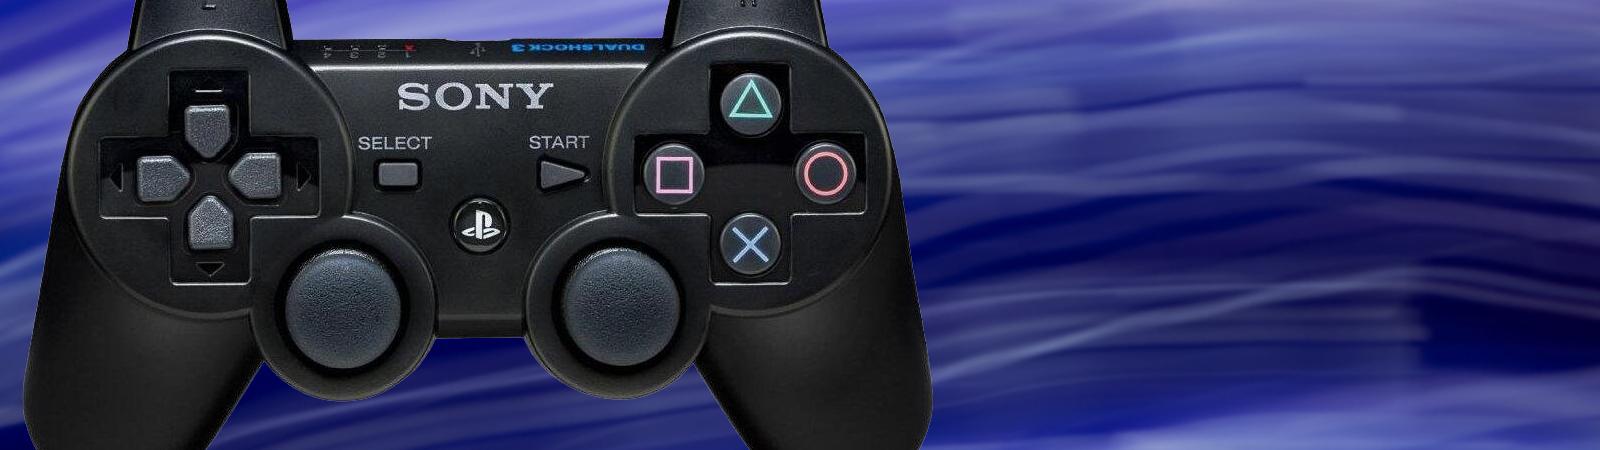 GooHoo: PS3Gameskopen.nl - De PlayStation 3 en consoles